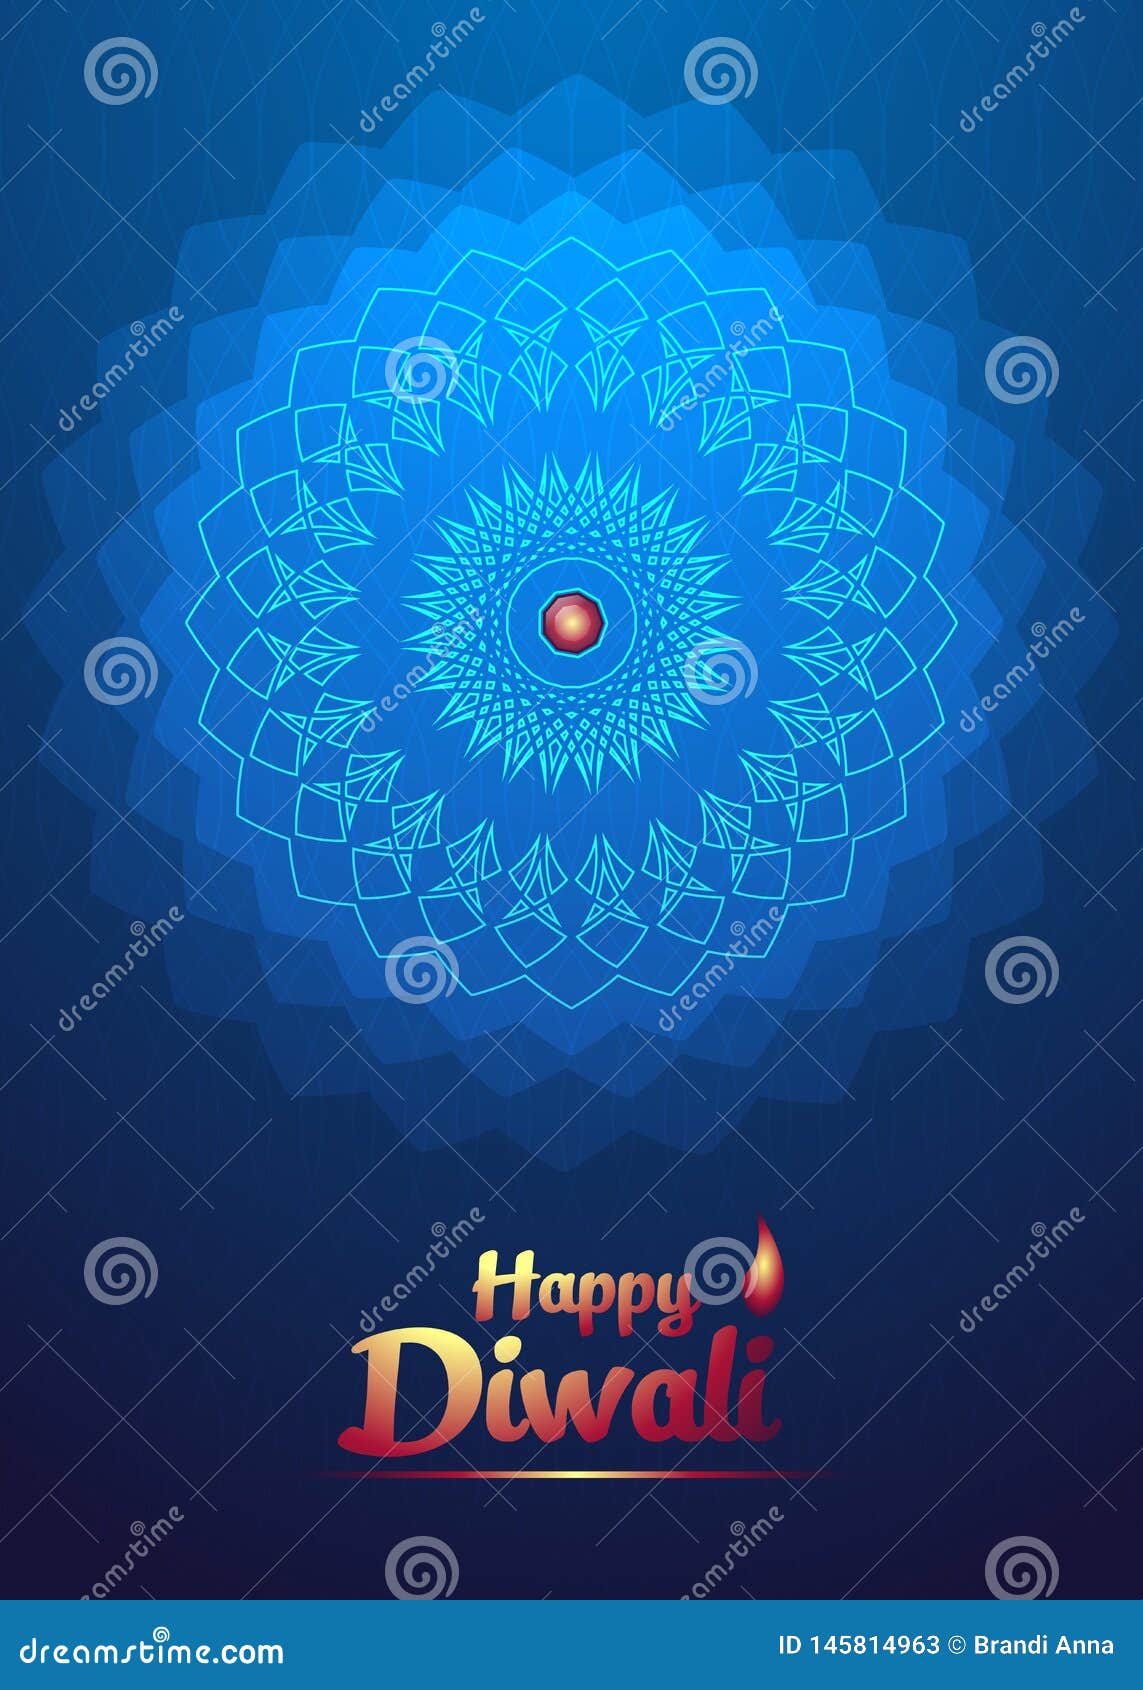 Happy Diwali Festival Background Blue Light Flower Stock ...